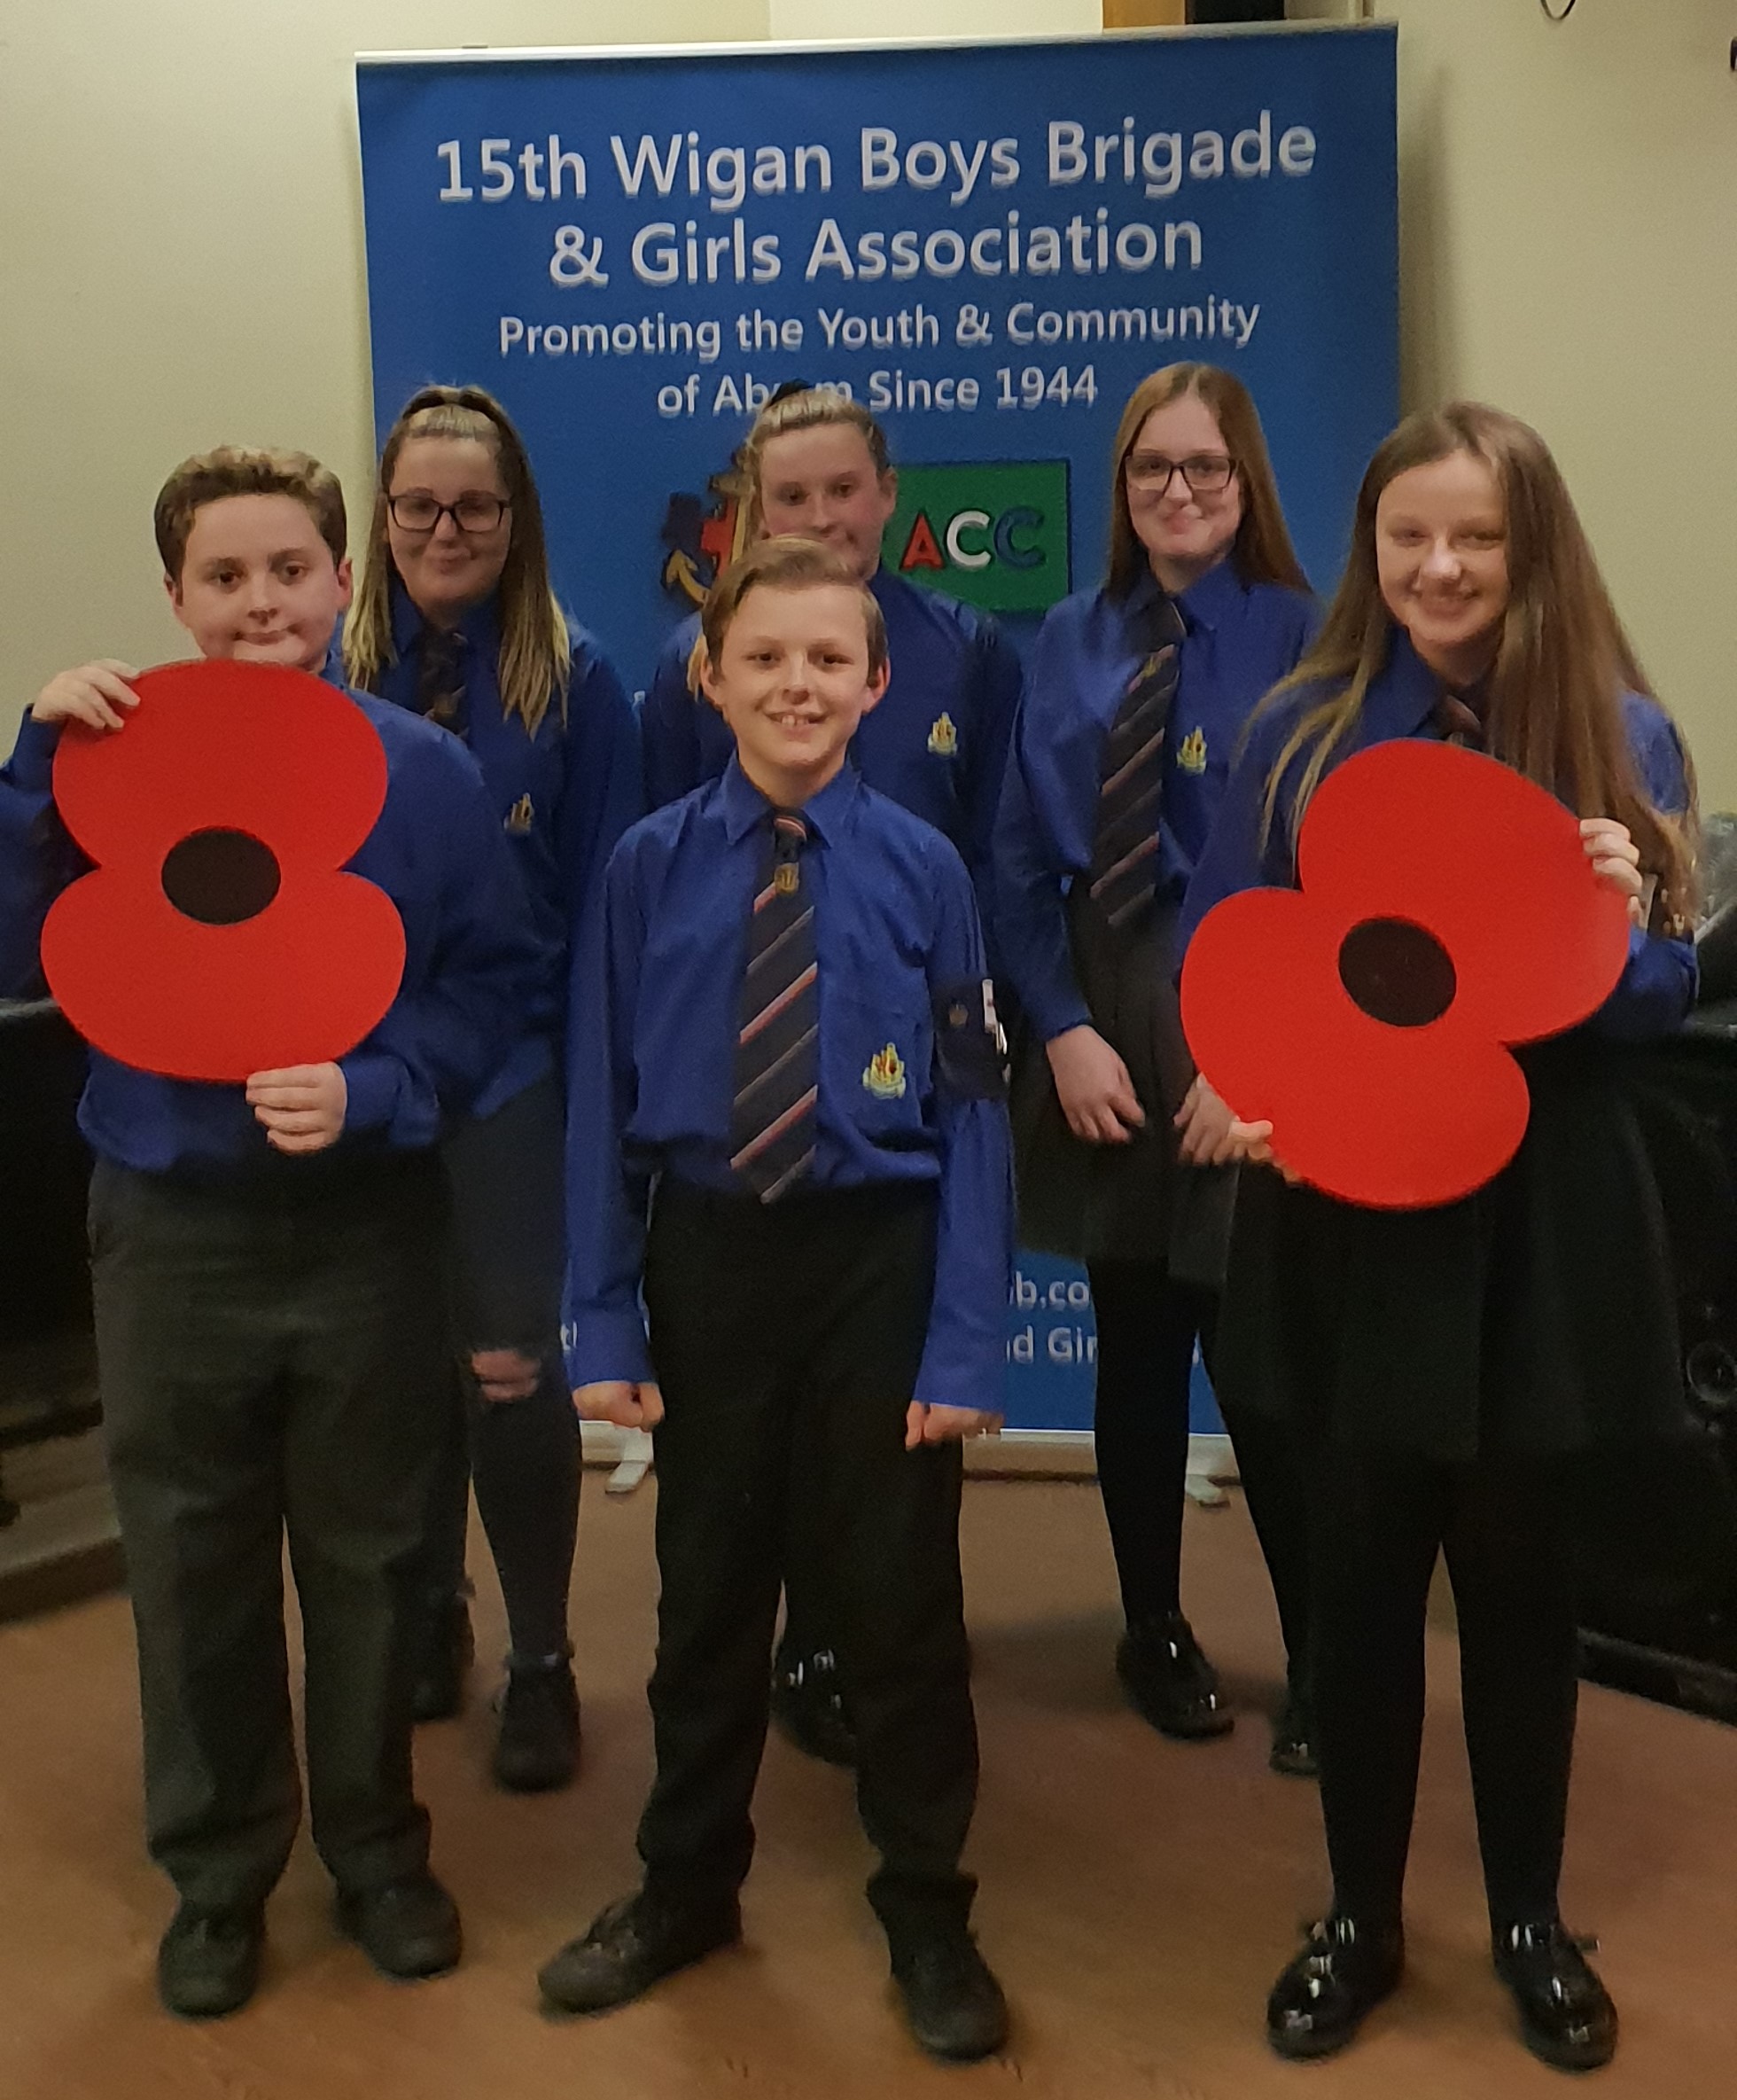 15th Wigan Boys Brigade & Girls Association